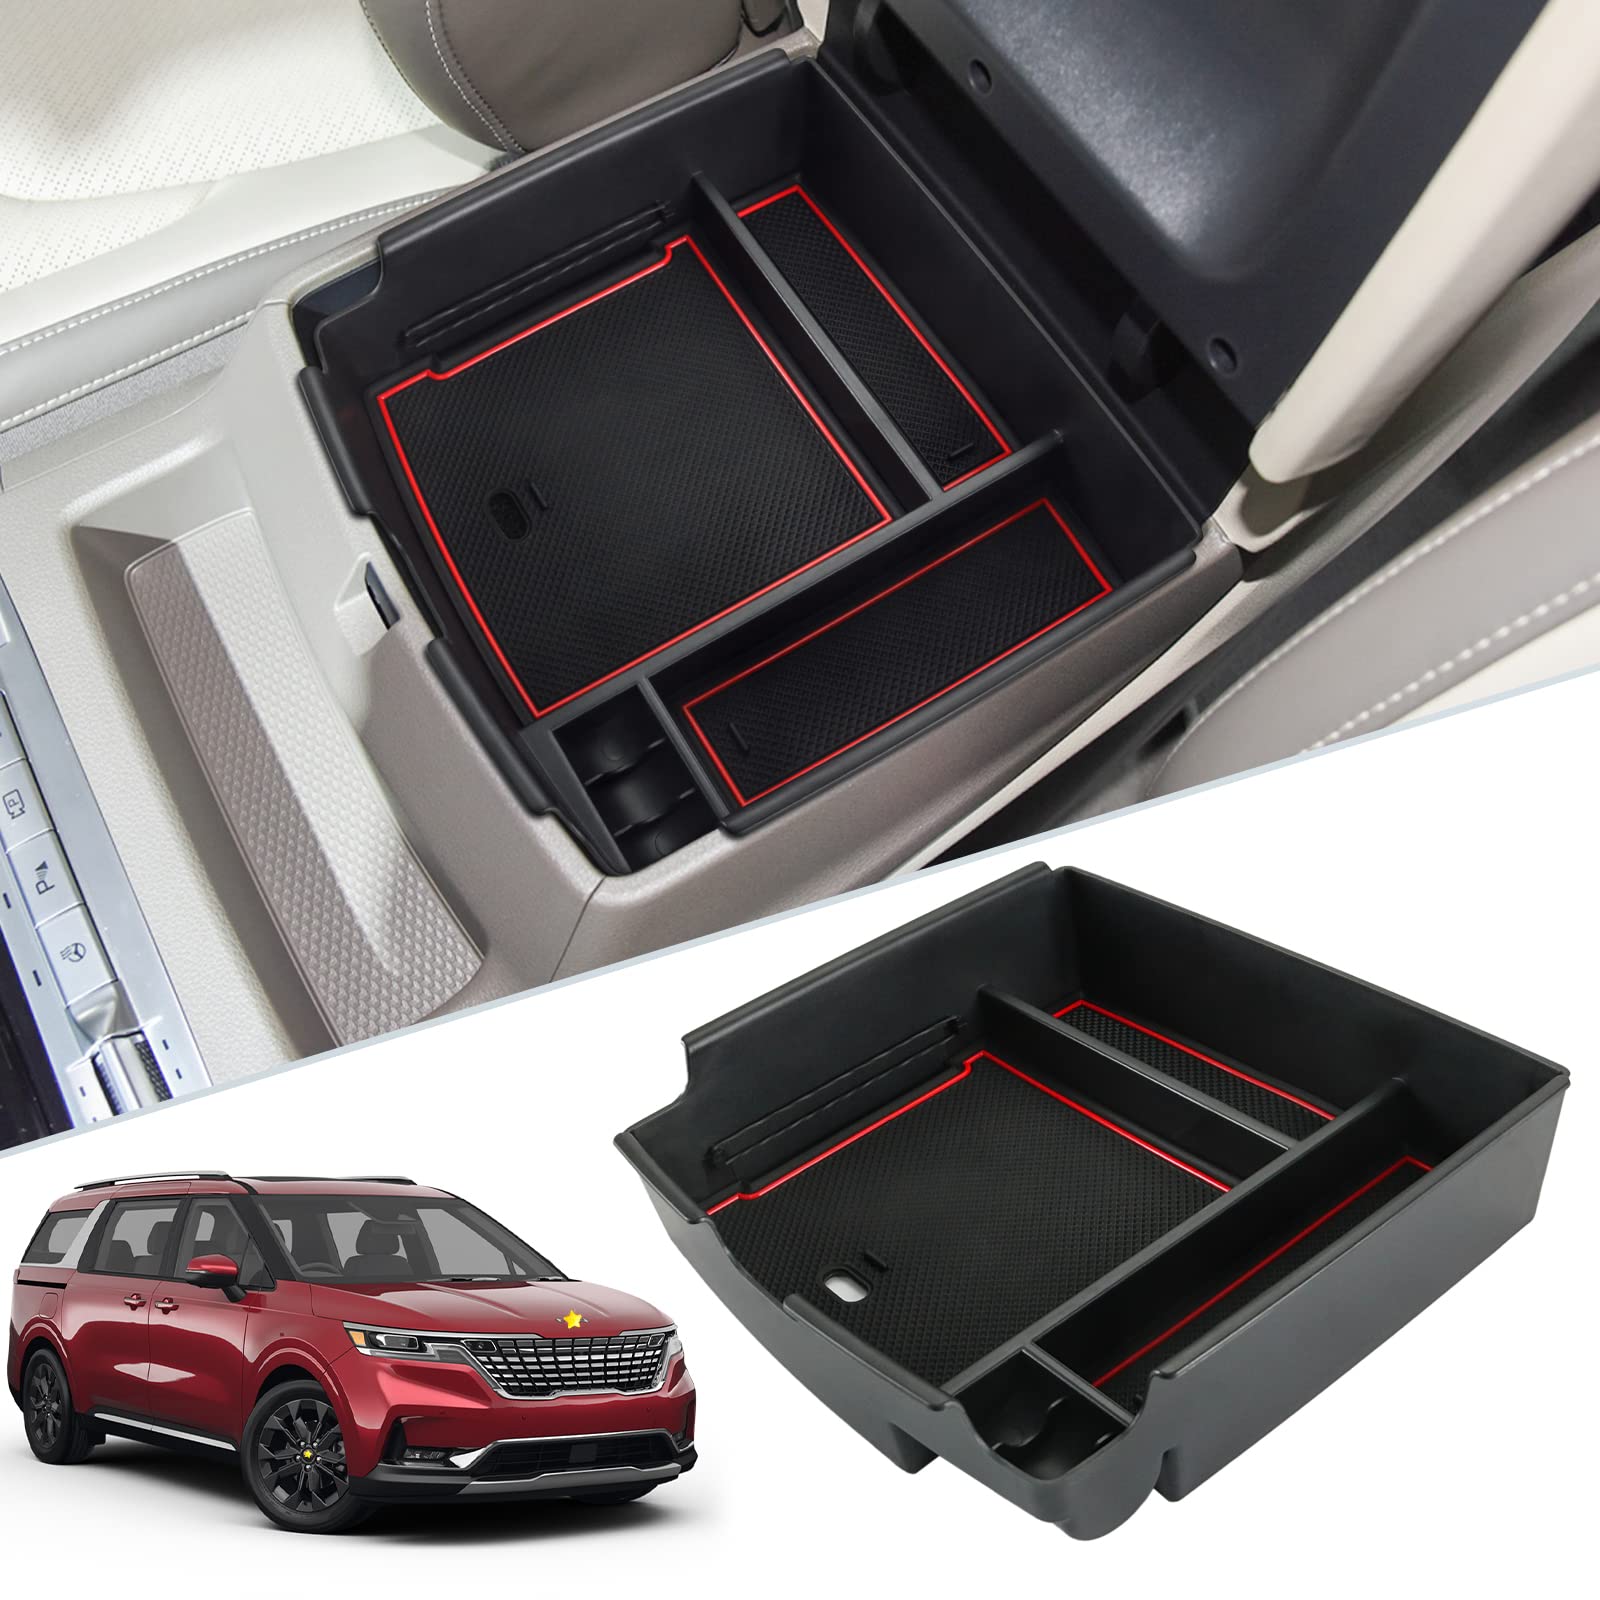 Kia Carnival MPV Center Armrest Storage Tray 2022+ - LFOTPP Car Accessories